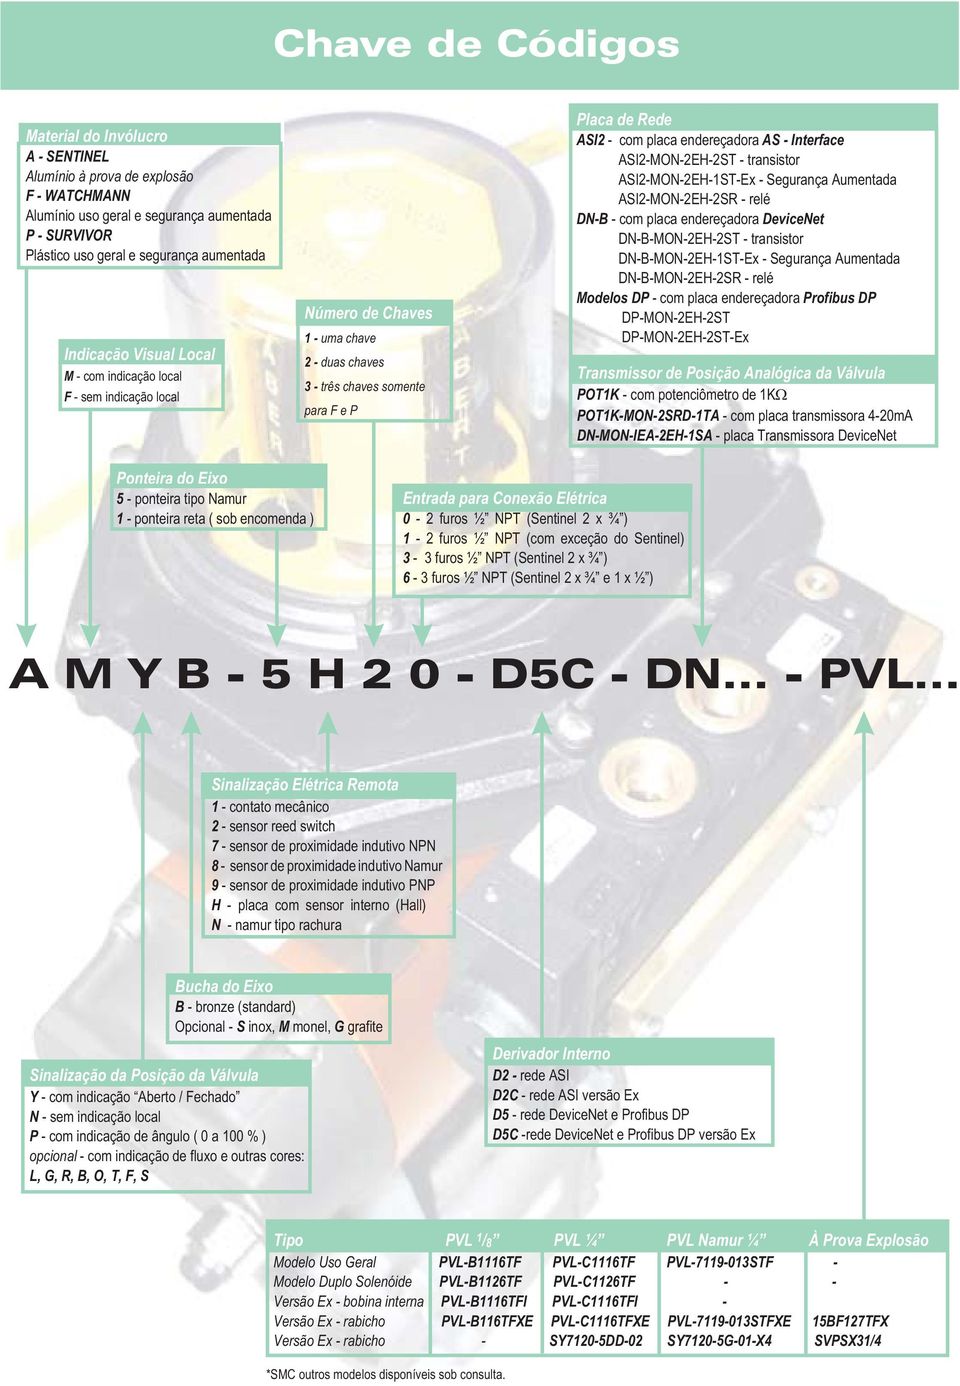 osição 20 ma laca de Rede ASI2 - com placa endereçadora AS - Interface ASI2-M-2H-2ST - transistor ASI2-M-2H-1ST-x - Segurança Aumentada ASI2-M-2H-2SR - relé D-B - com placa endereçadora Deviceet